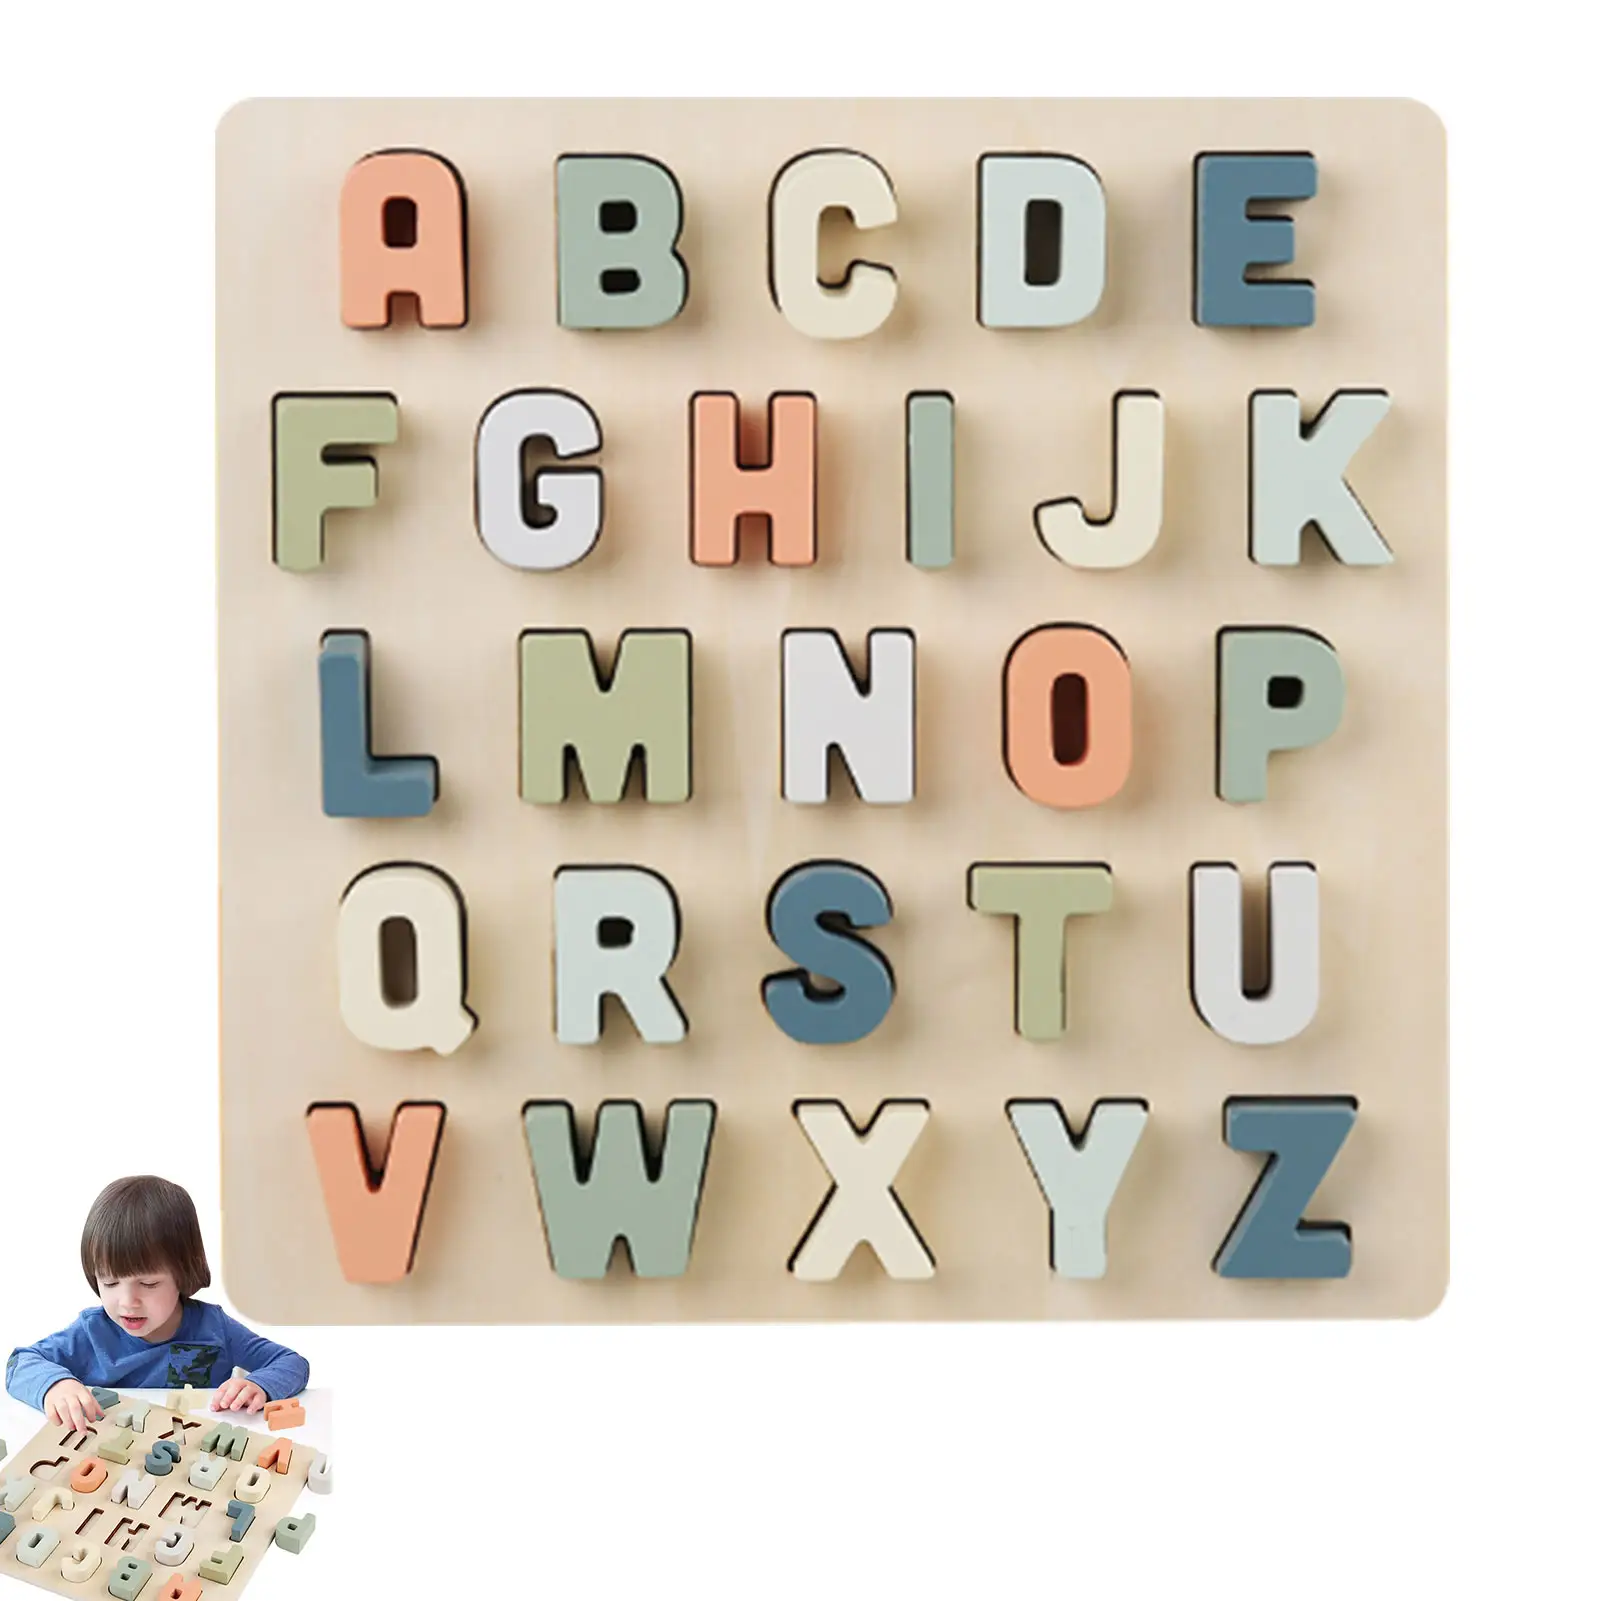 ทุนจดหมายบล็อก3D ของเล่นไม้ Montessori ต้นการศึกษาไม้จิ๊กซอว์ปริศนา ABC บล็อกสำหรับเด็ก